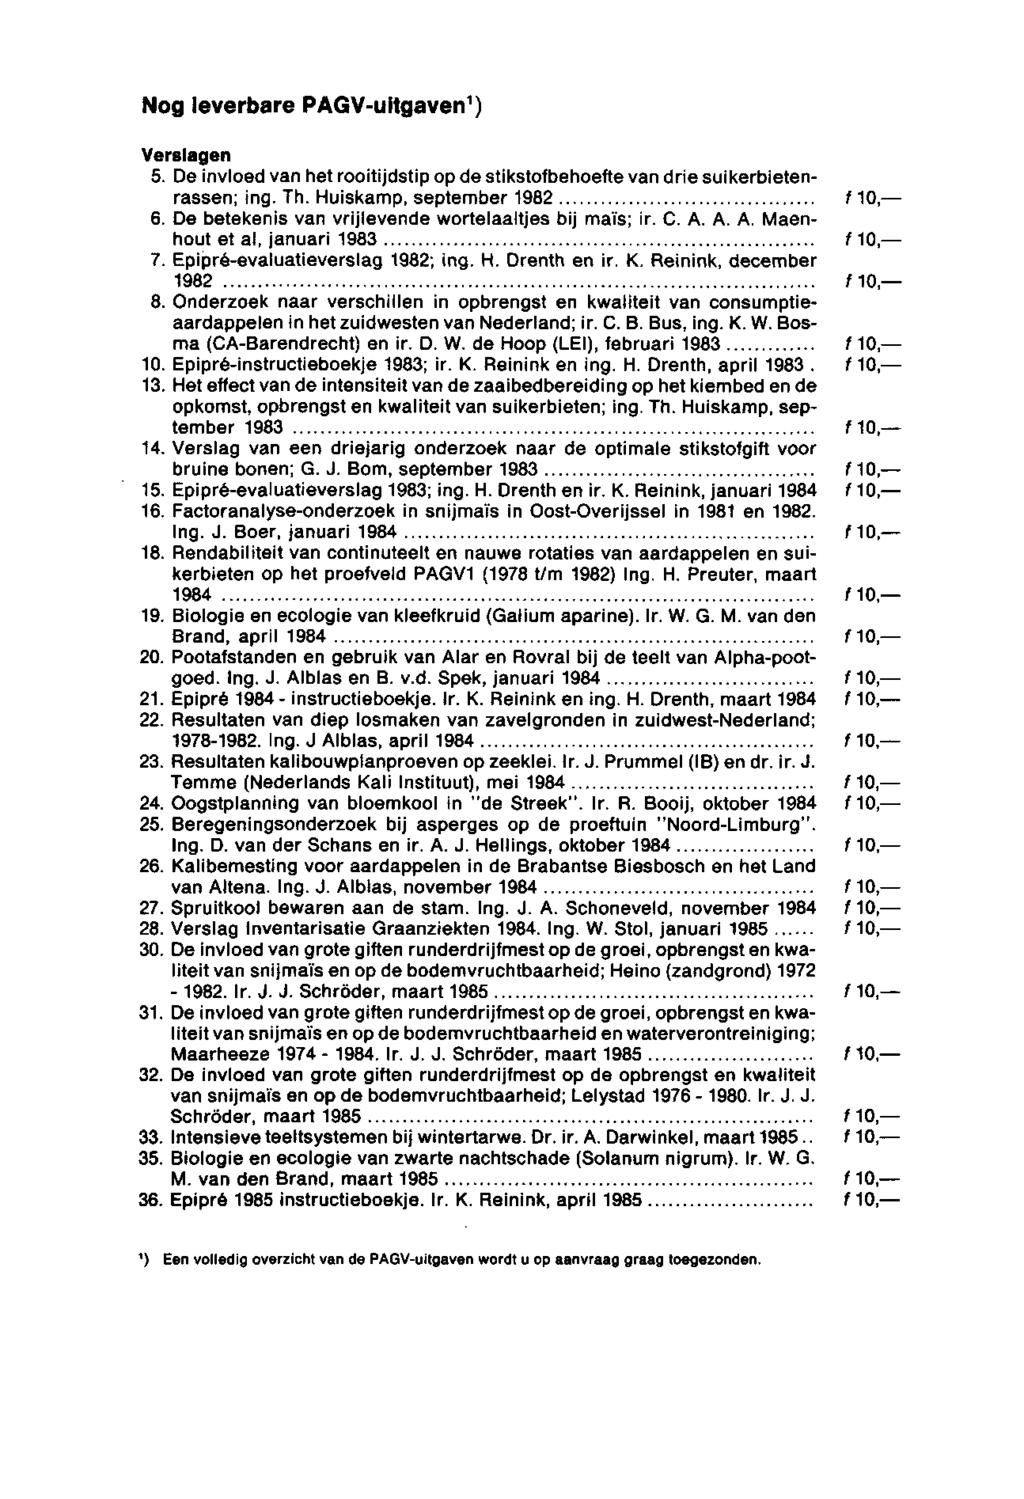 Nogleverbare PAGV-uitgaven 1 ) Verslagen 5. De invloed van het rooitijdstip op de stikstofbehoefte van drie suikerbietenrassen; ing. Th. Huiskamp, september 1982 f 1,- 6.